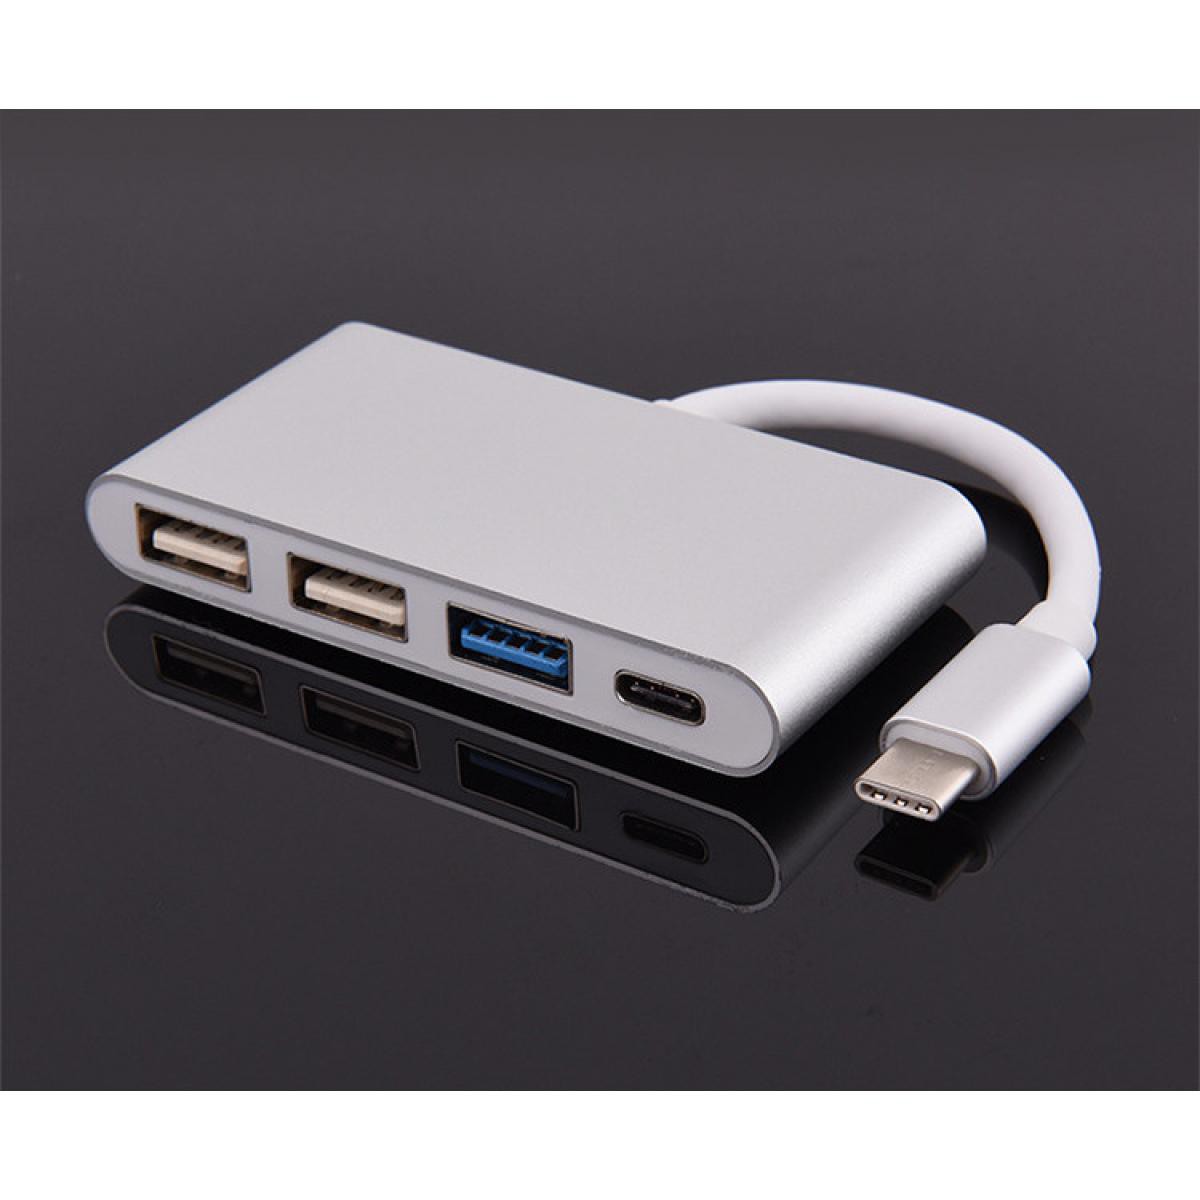 Shot - Multi Adaptateur 4 en 1 Type C pour MEIZU Pro 6 Smartphone Hub 2 ports USB 2.0 1 Port USB 3.0 (ARGENT) - Hub